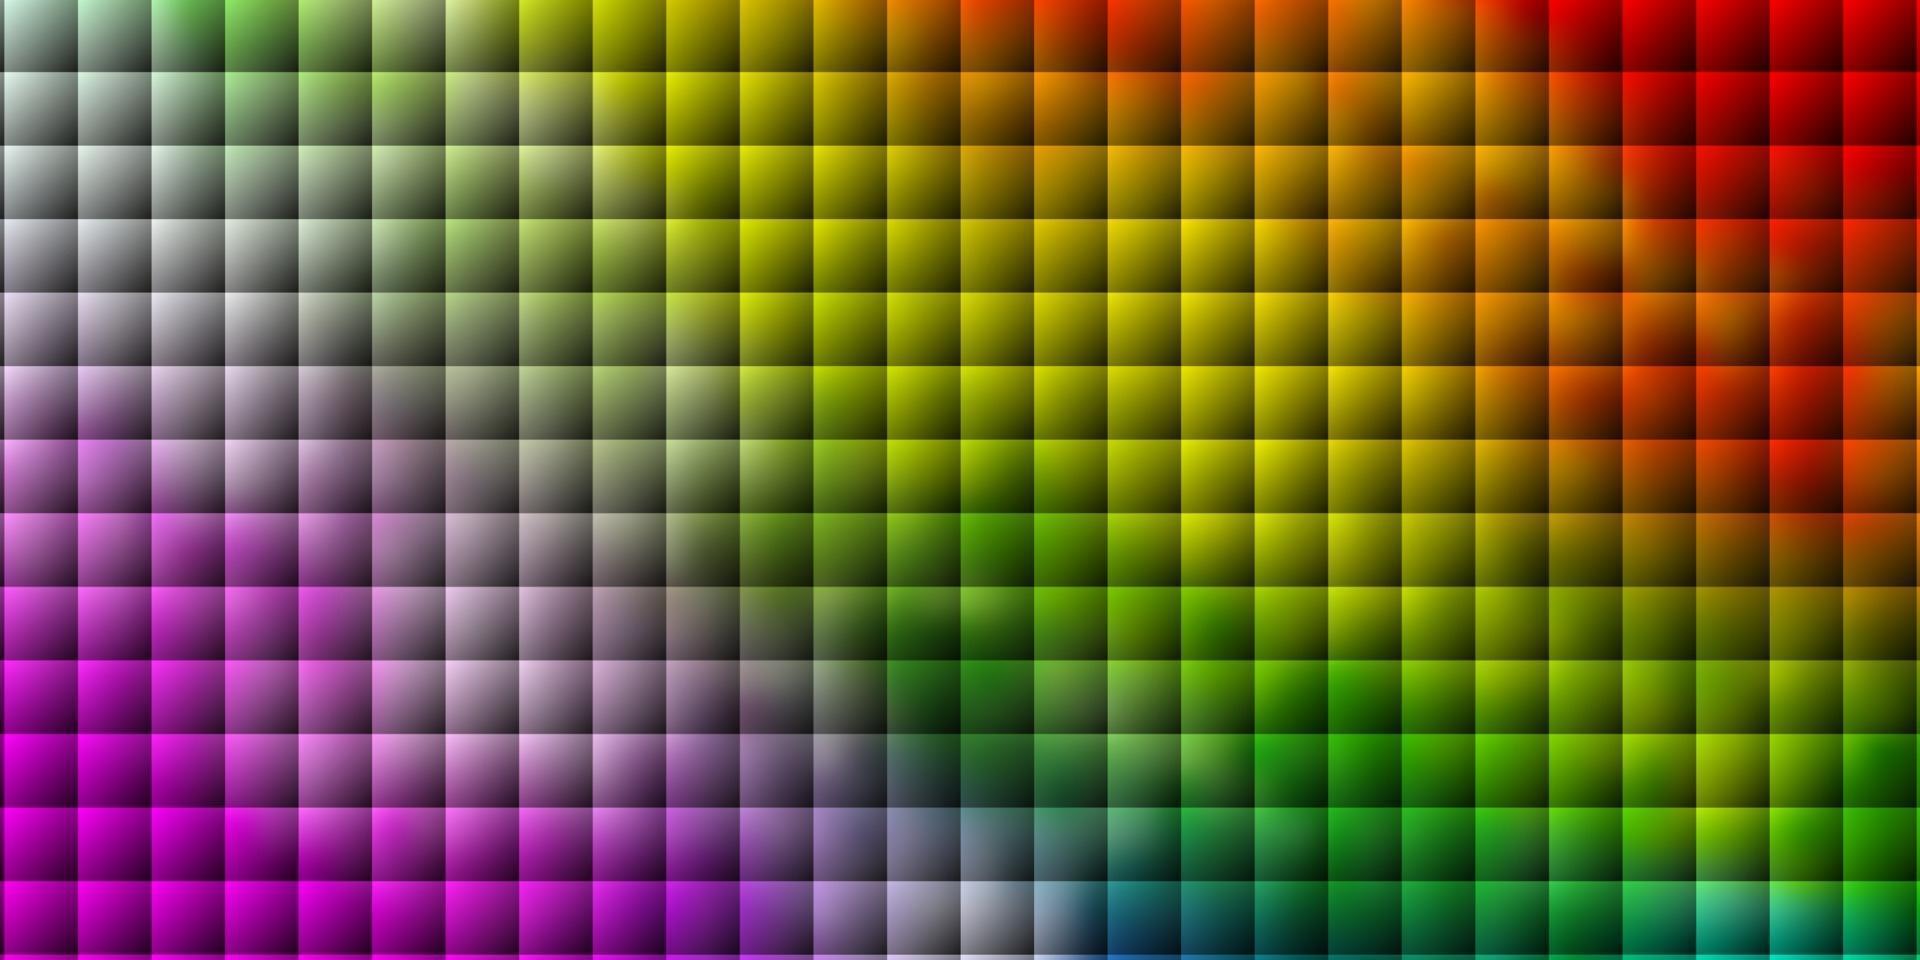 modèle vectoriel multicolore clair dans un style carré.